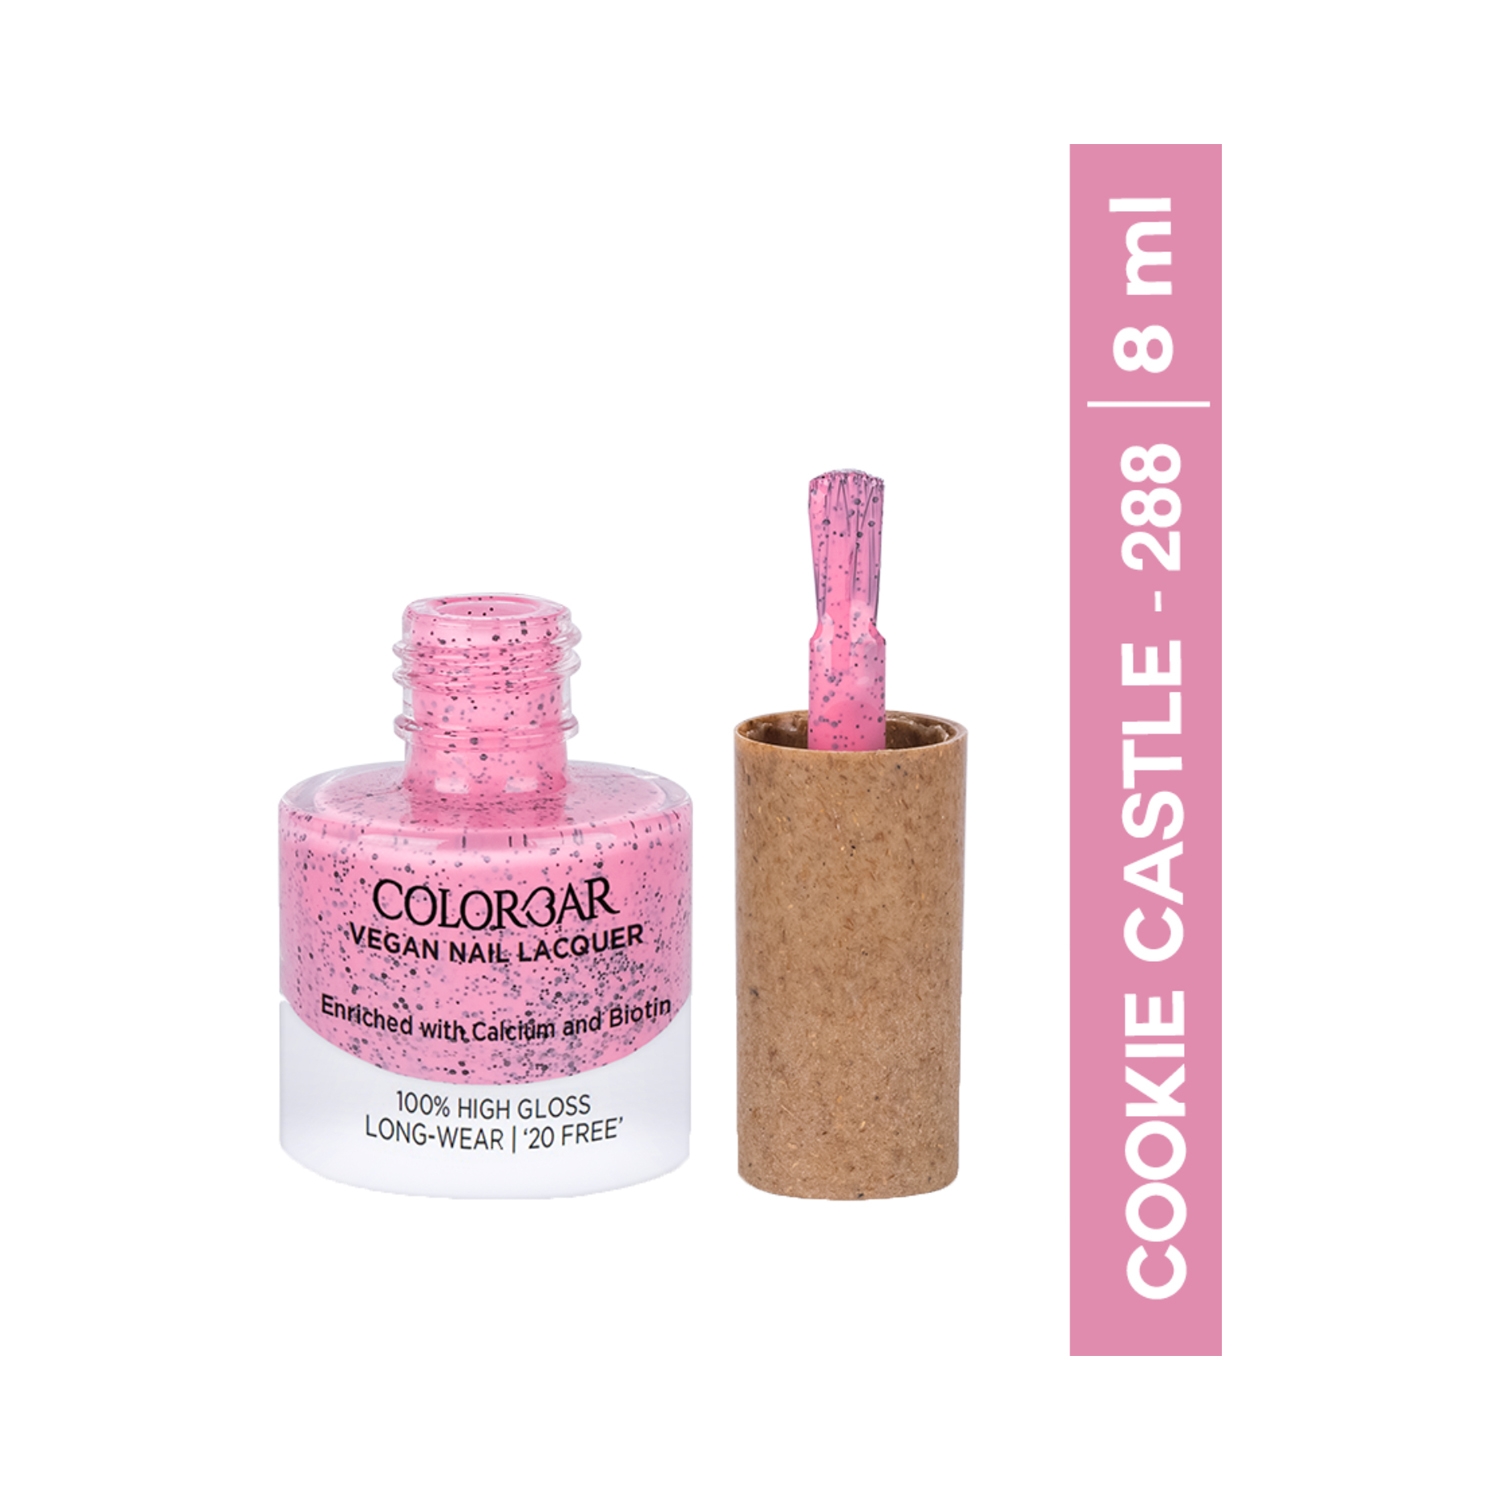 Colorbar | Colorbar Vegan Nail Lacquer - 288 Cookie Castle (8 ml)